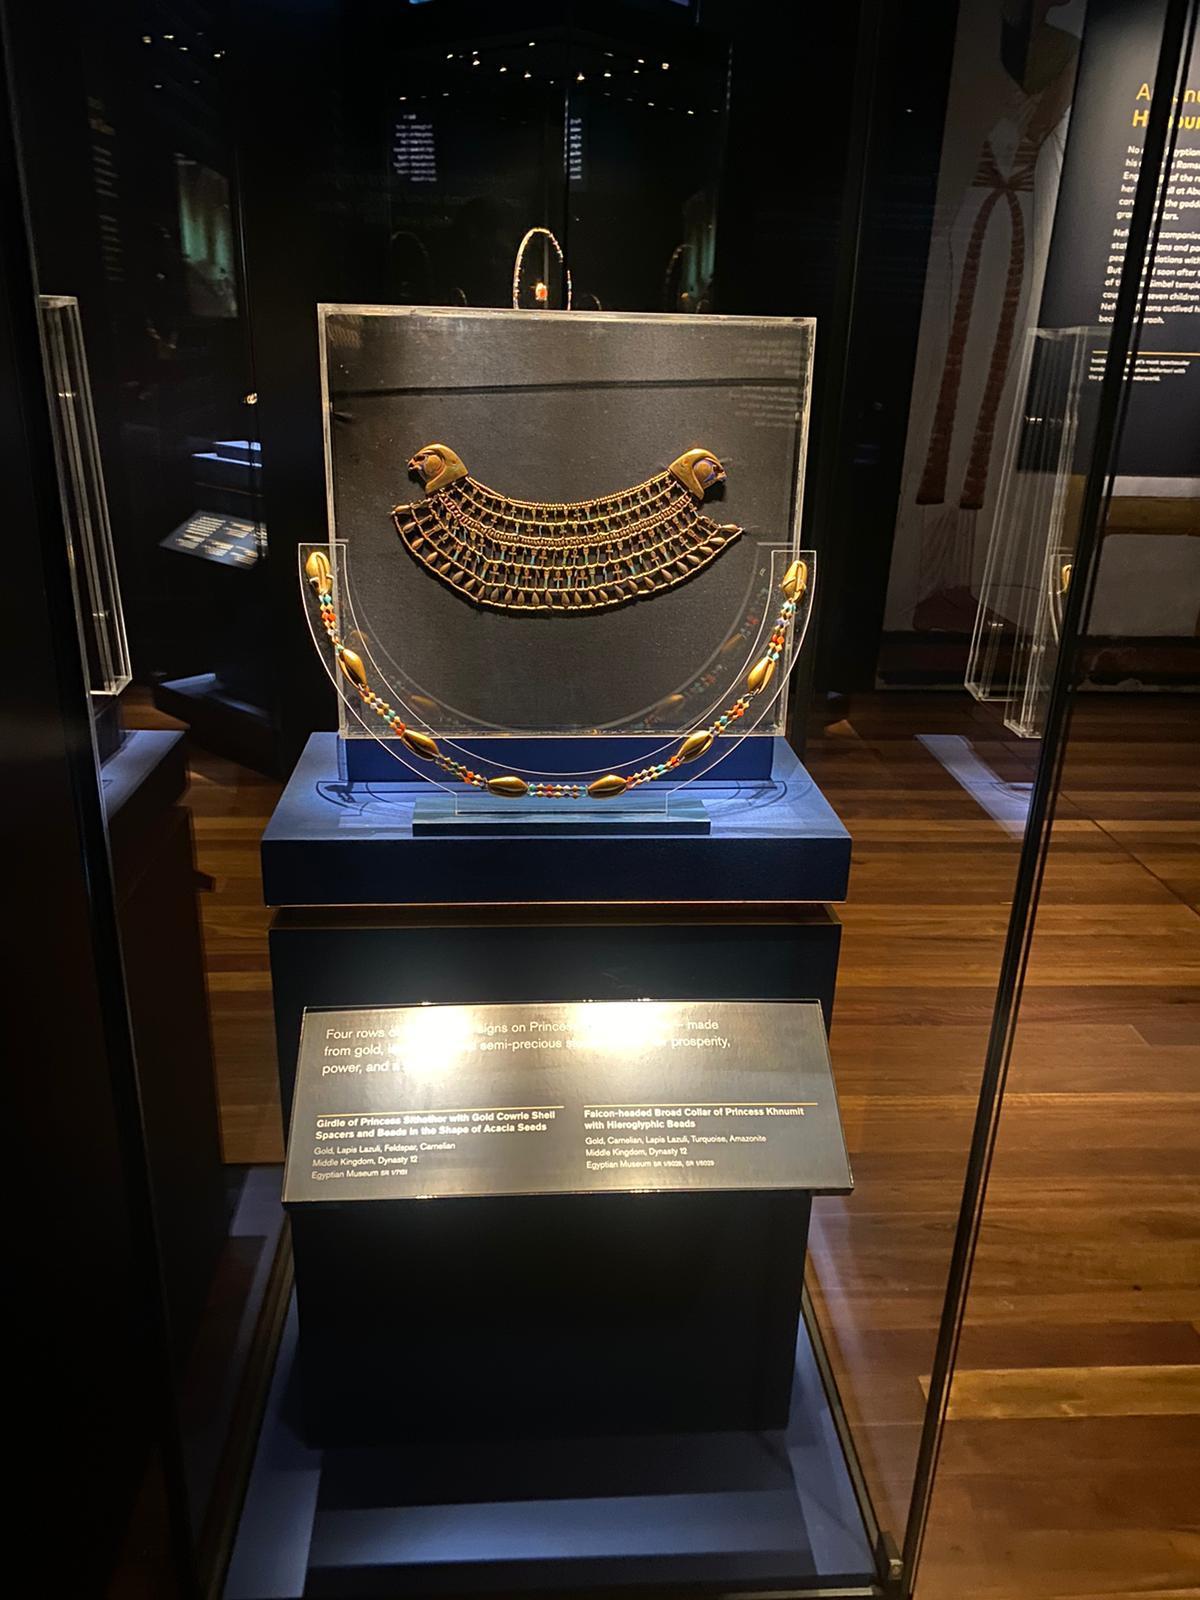 500 ألف زائر لمعرض رمسيس وذهب الفراعنة بمتحف سيدني في استراليا